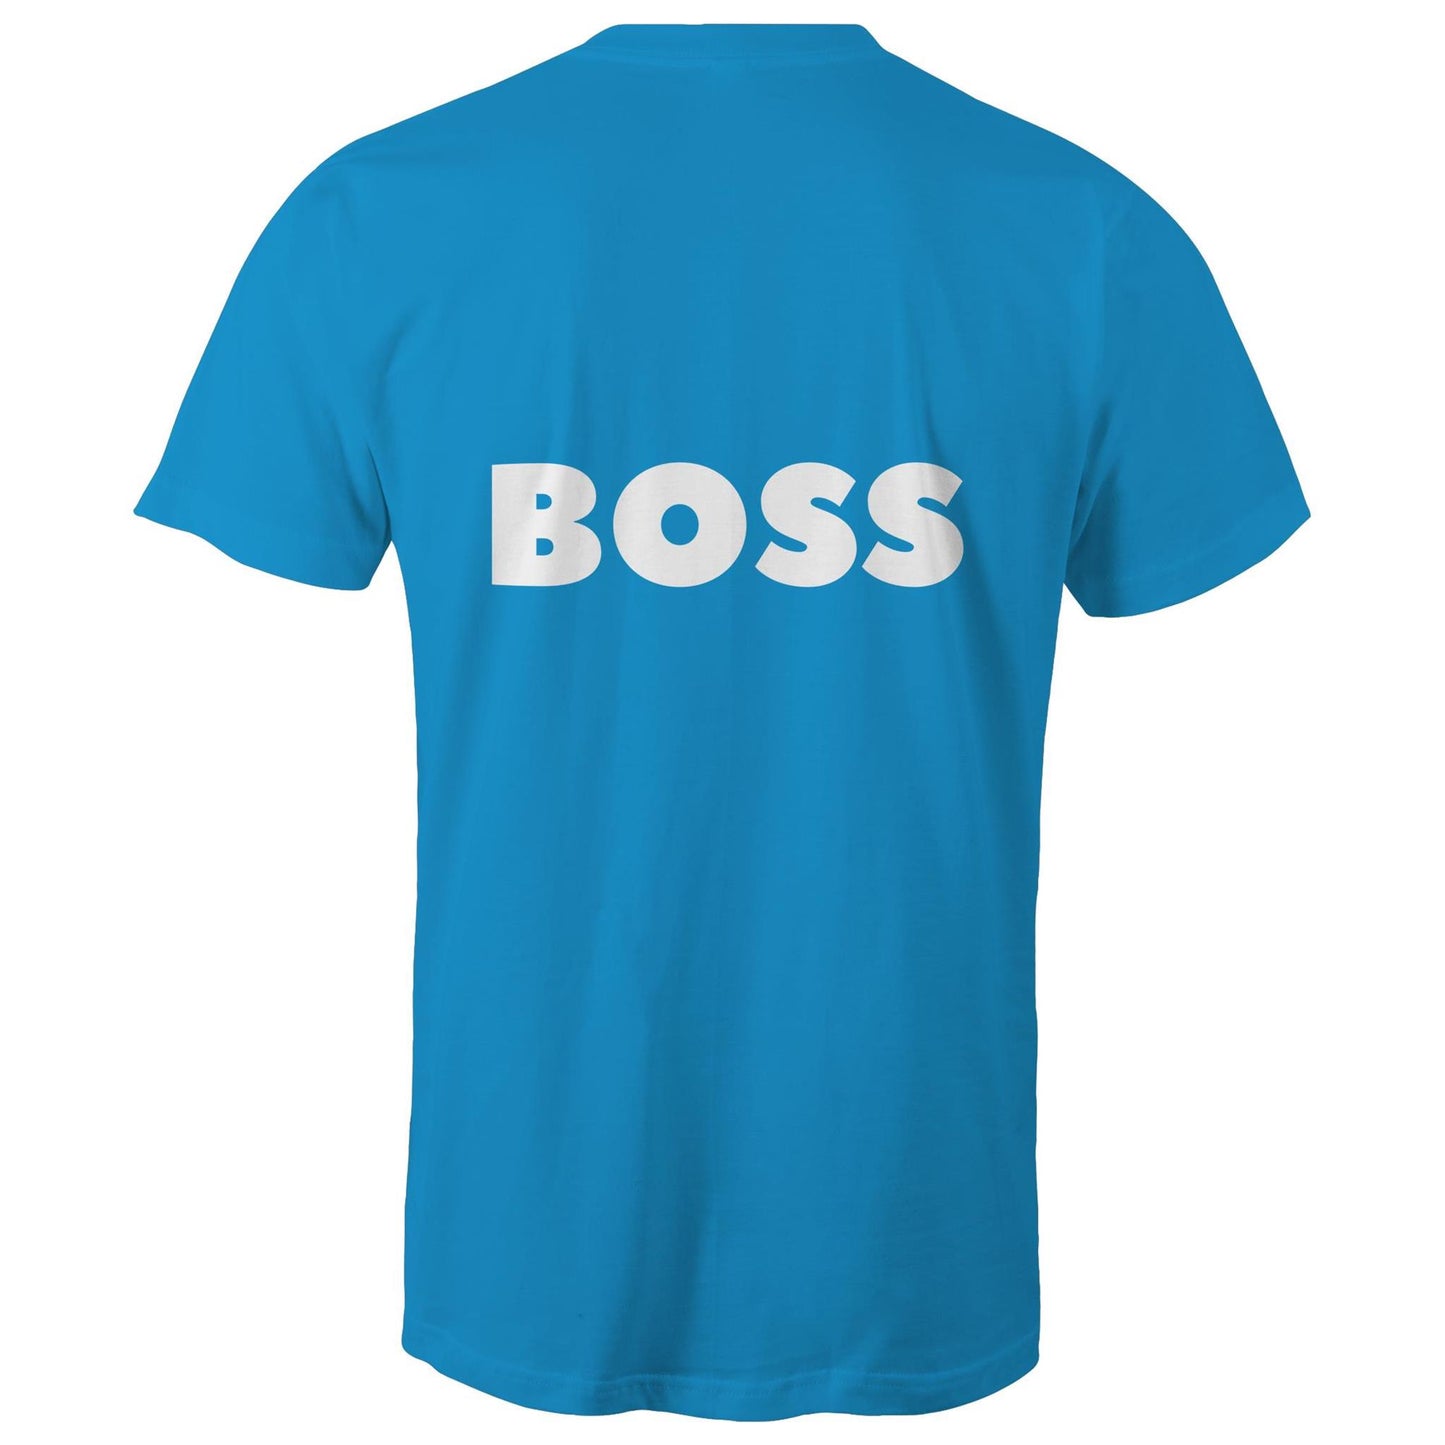 BOSS - Unisex T-Shirt